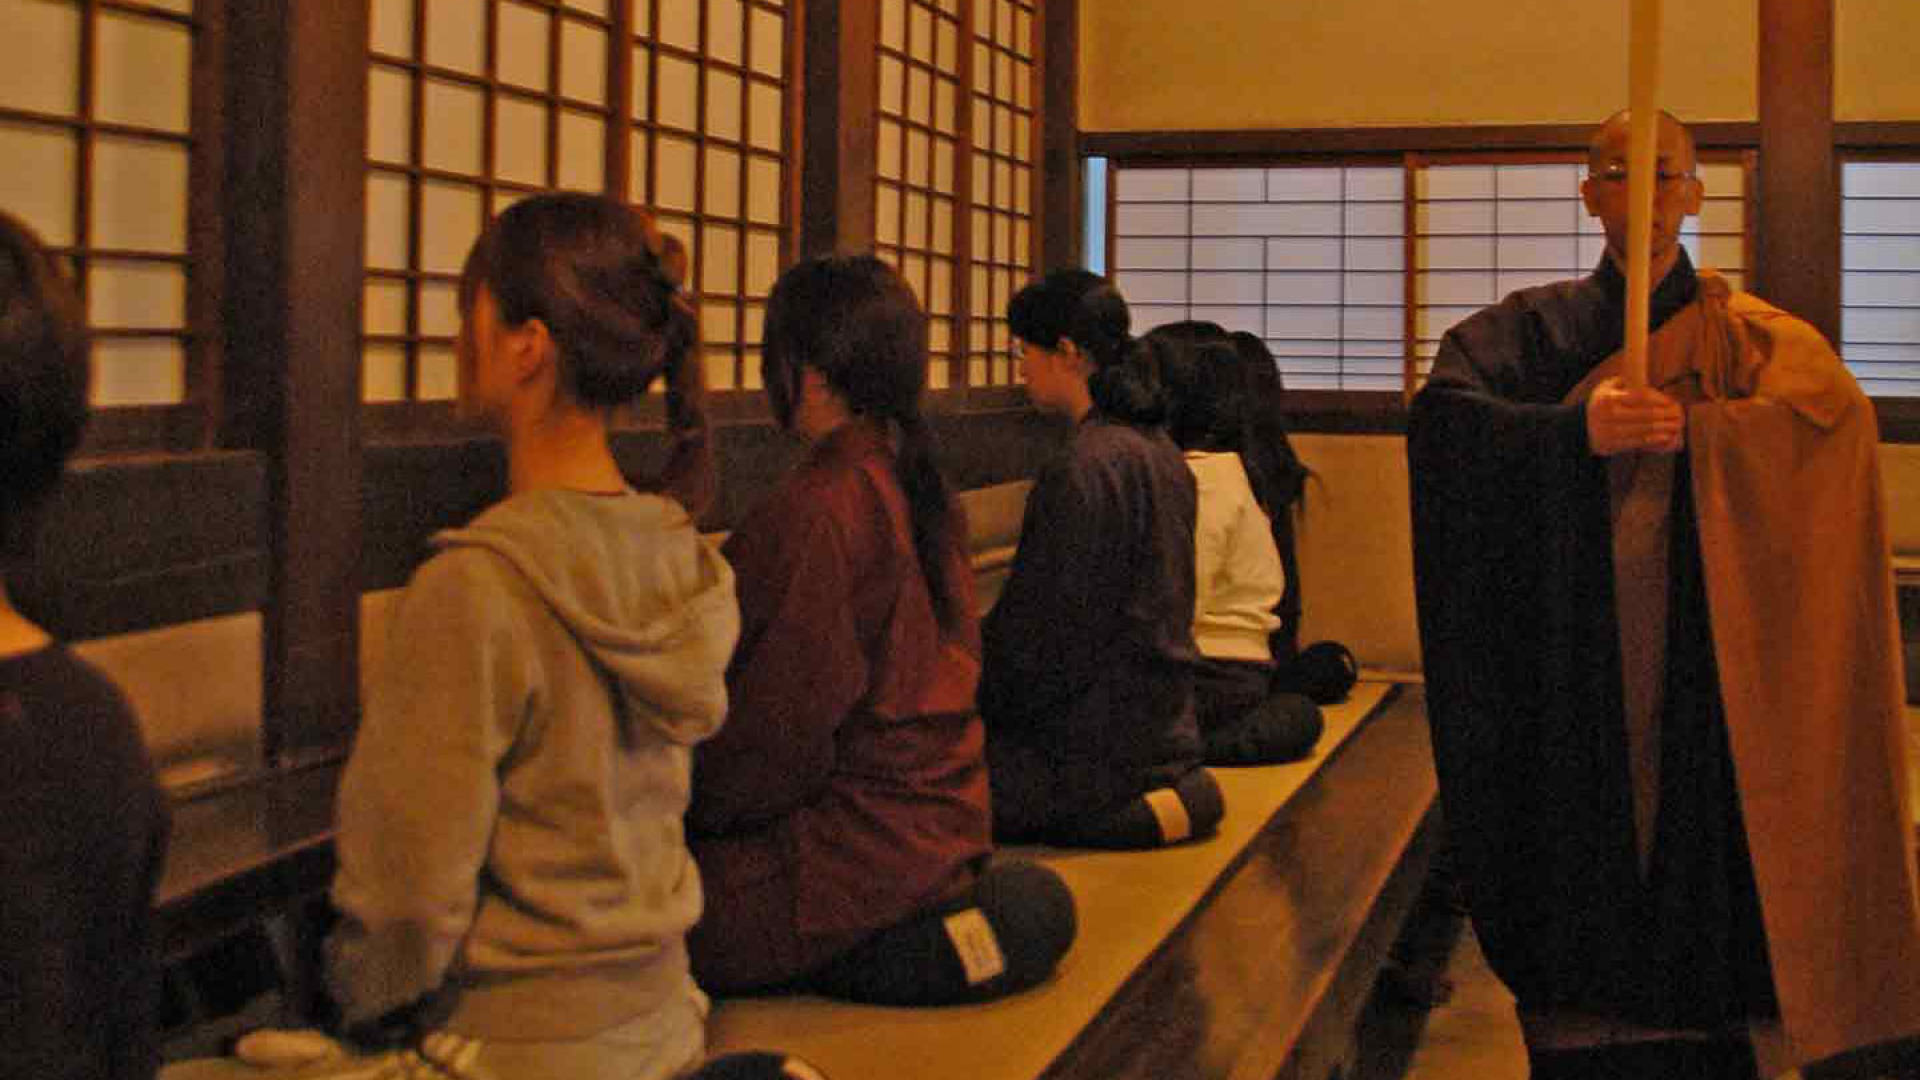 Templo Soji-ji